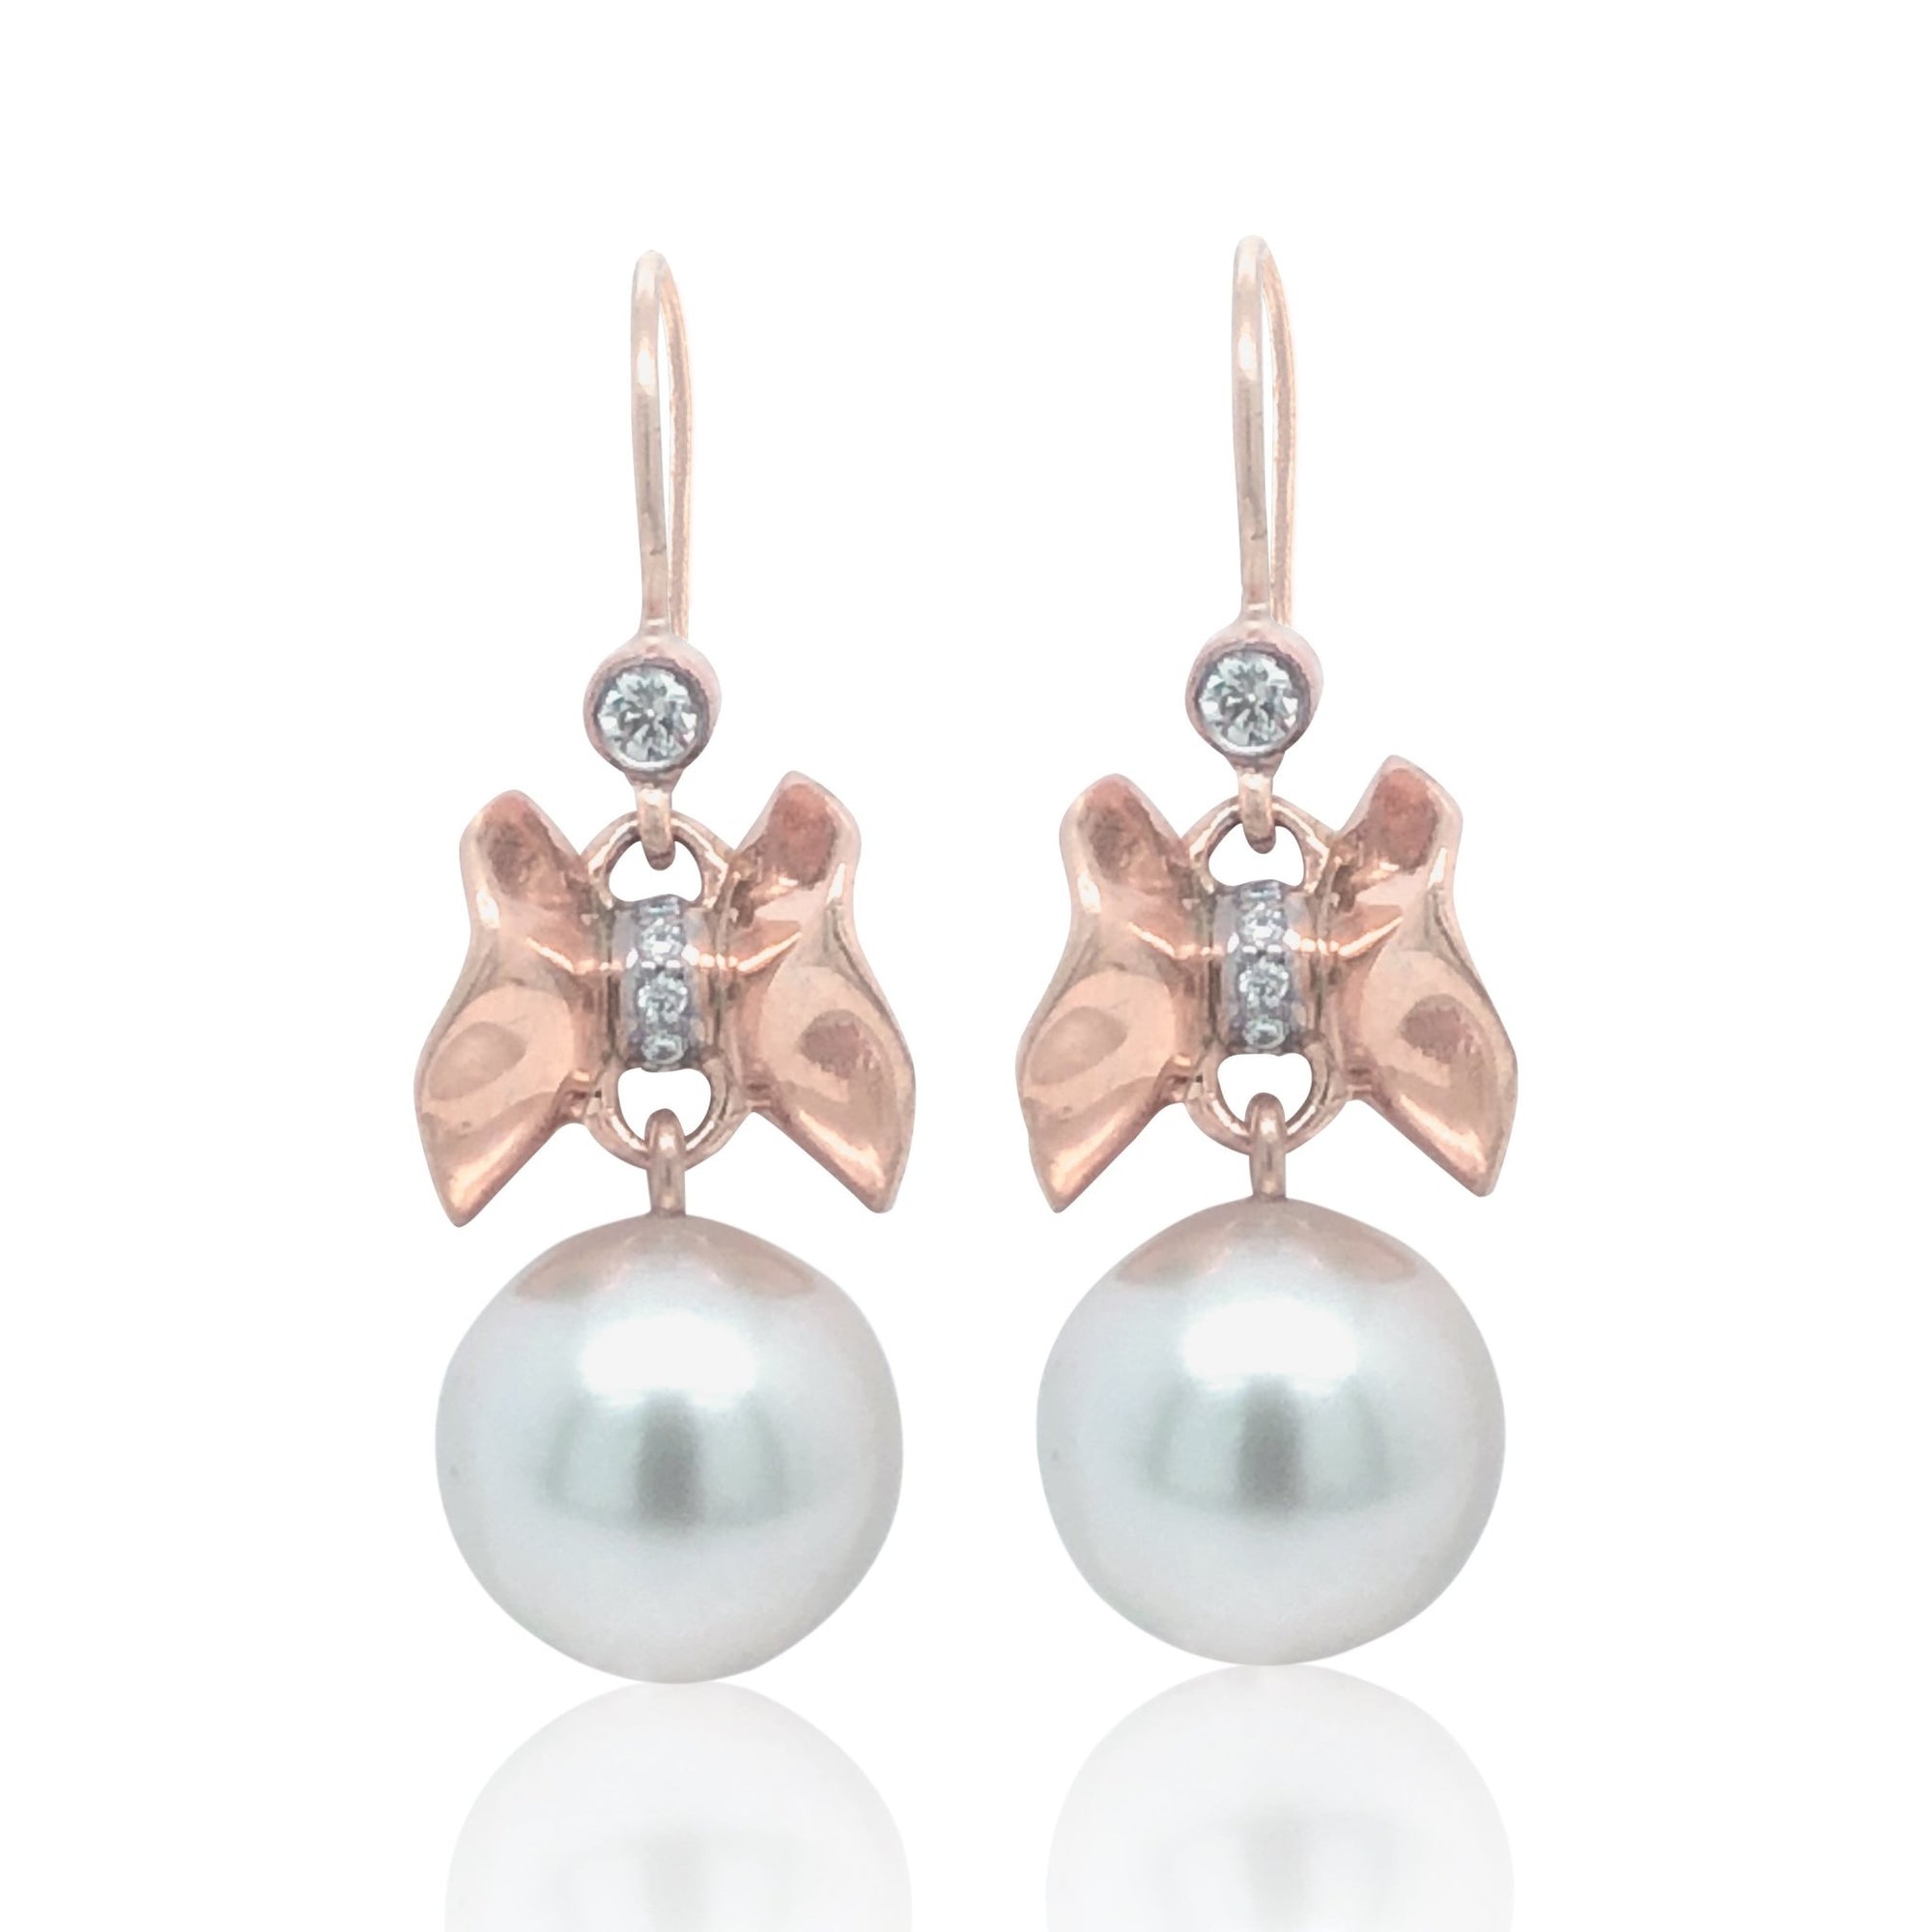 Upperline Wing Diamond Ruffle© South Sea Pearl Earrings 18KR - Ashleigh Branstetter®